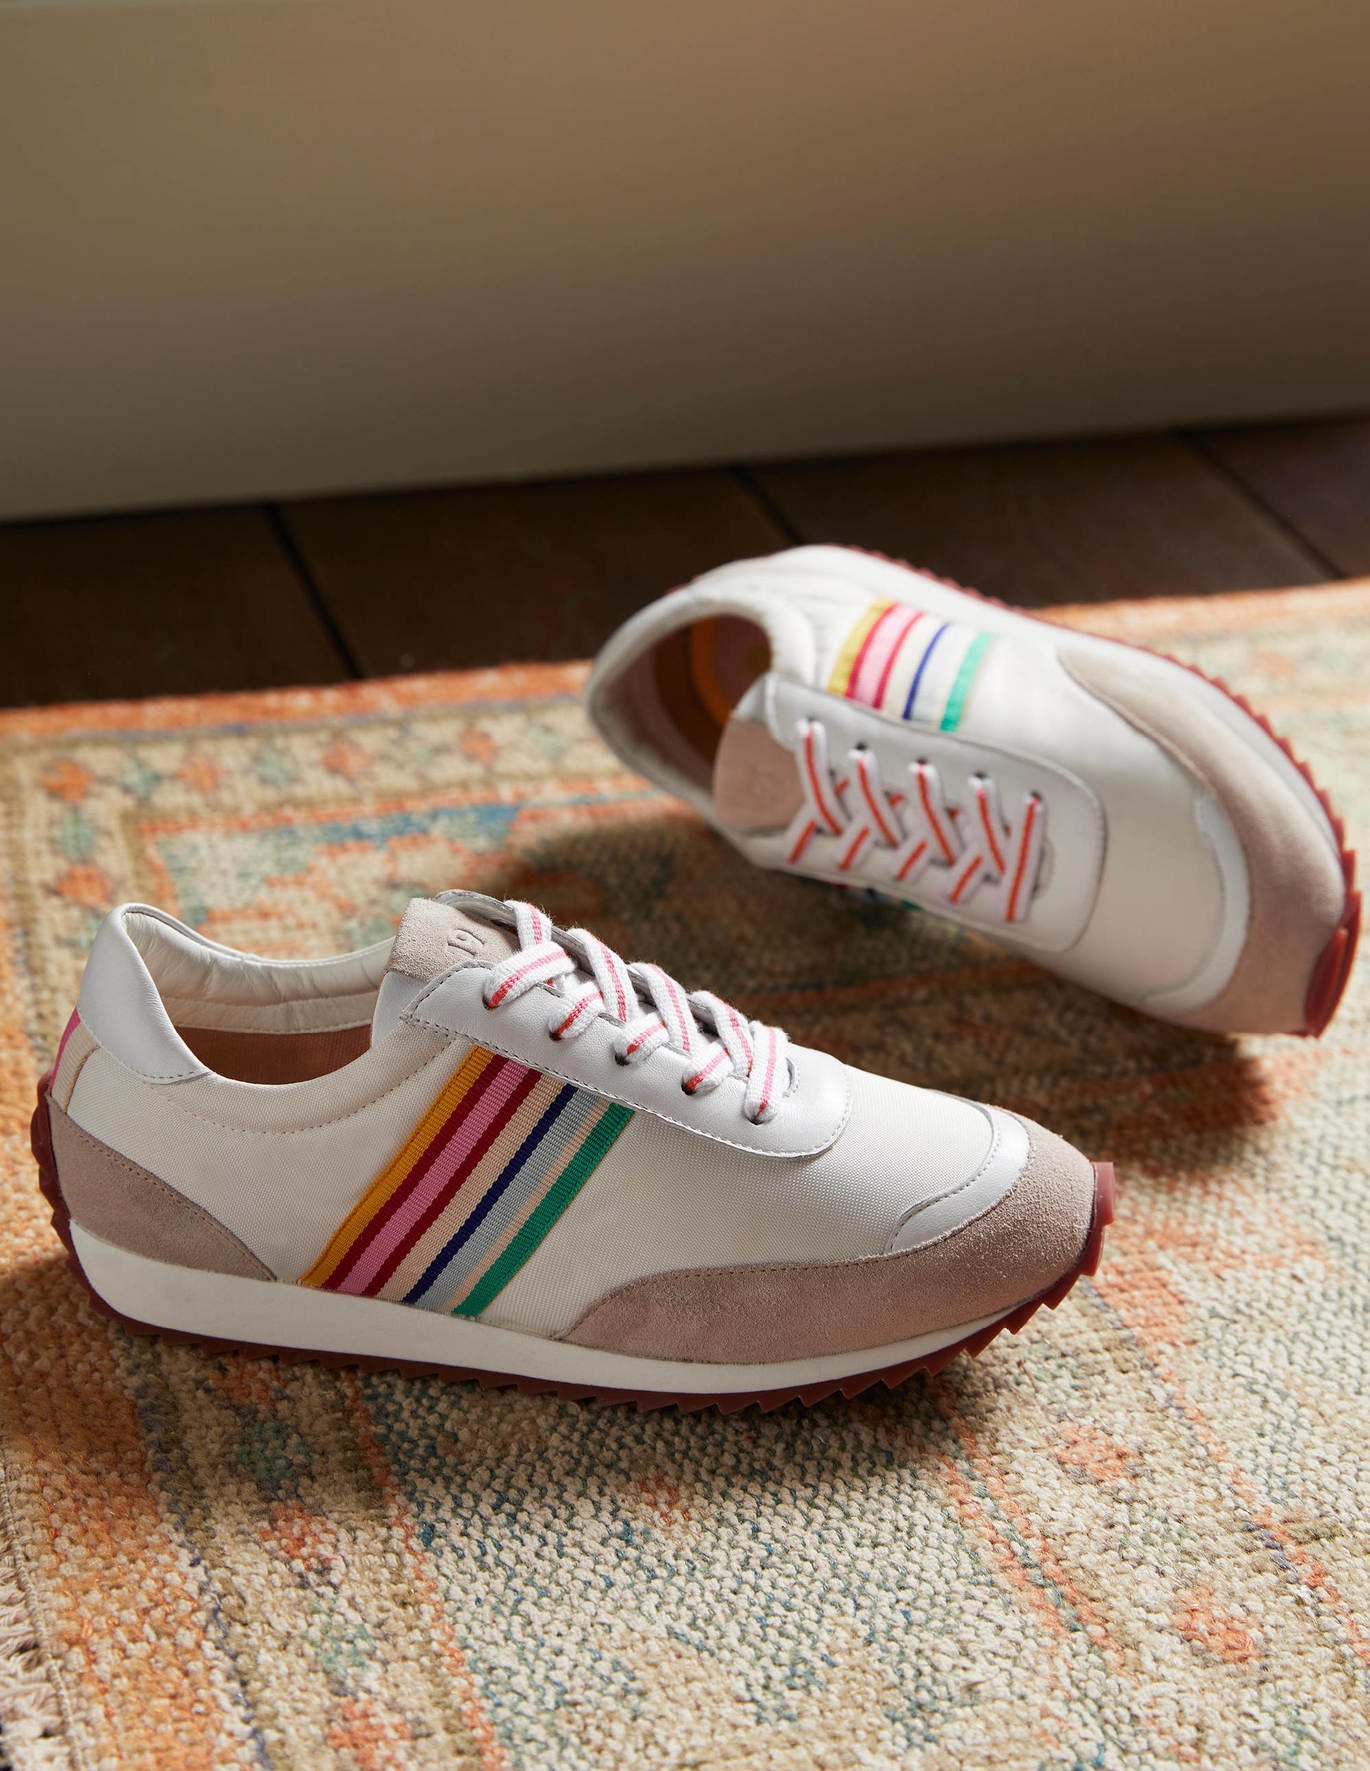 Boden Striped Runner Sneakers - White, Multi Stripe